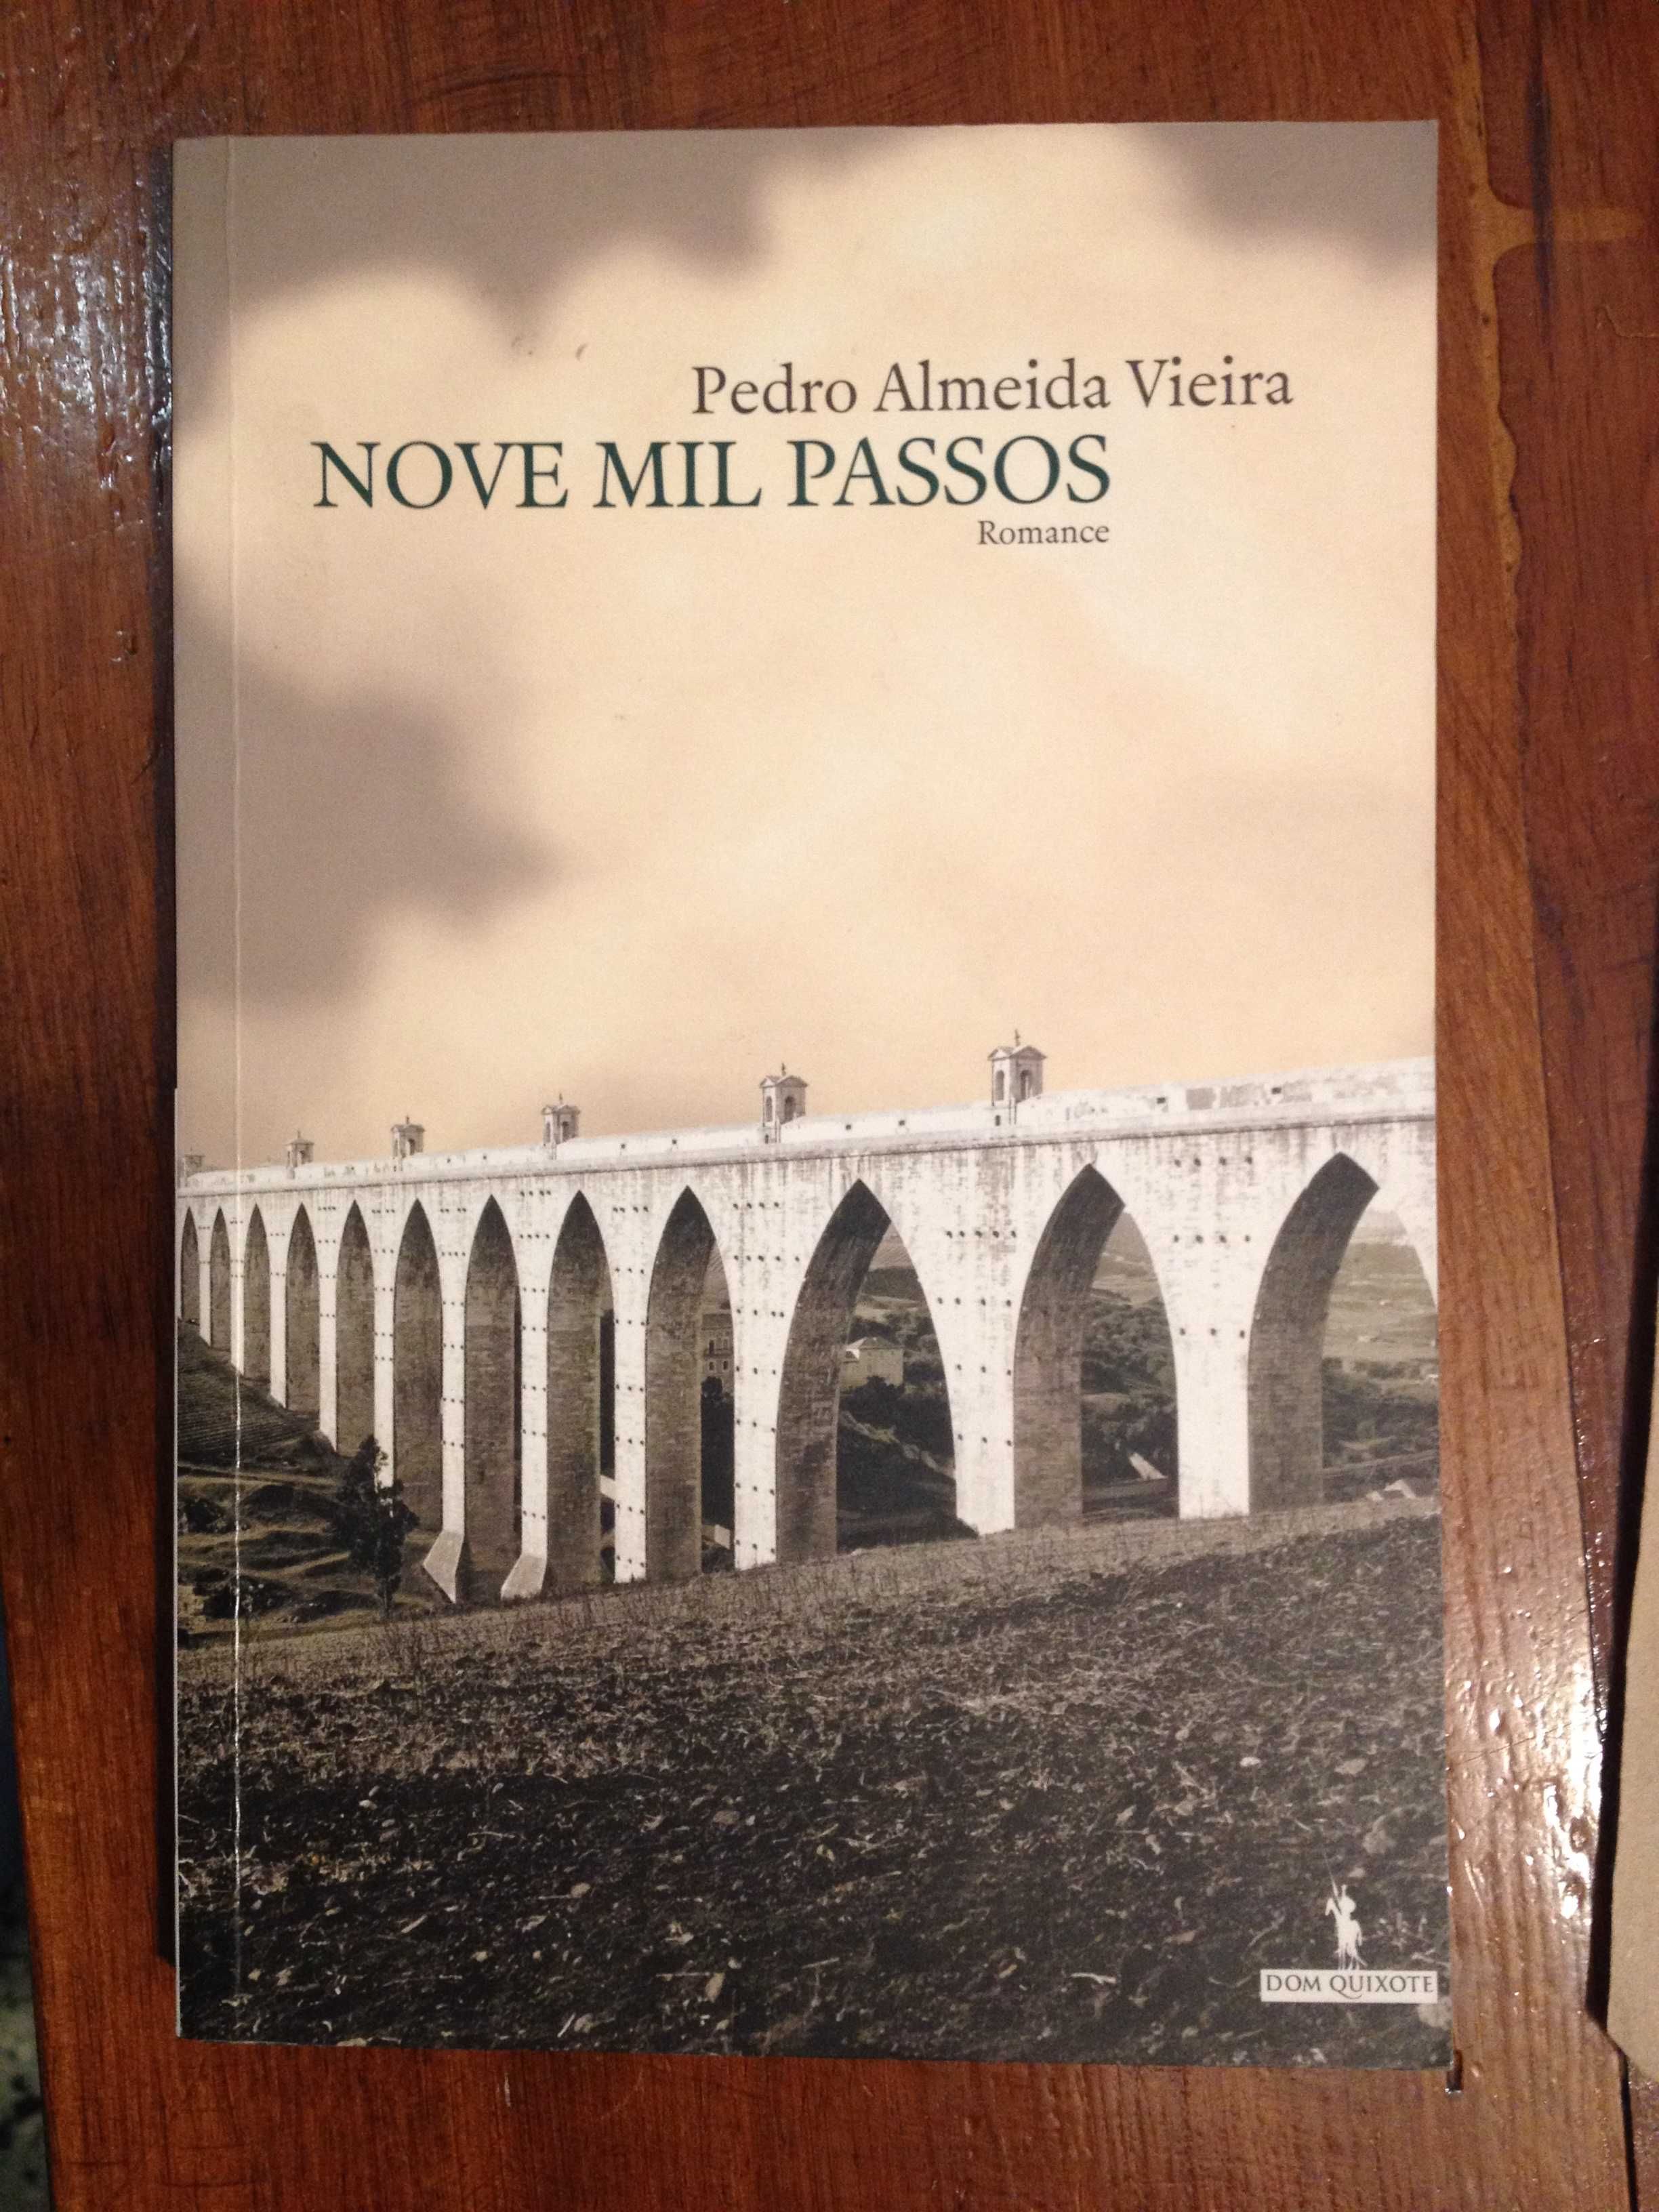 Pedro Almeida Vieira - Nove mil passos